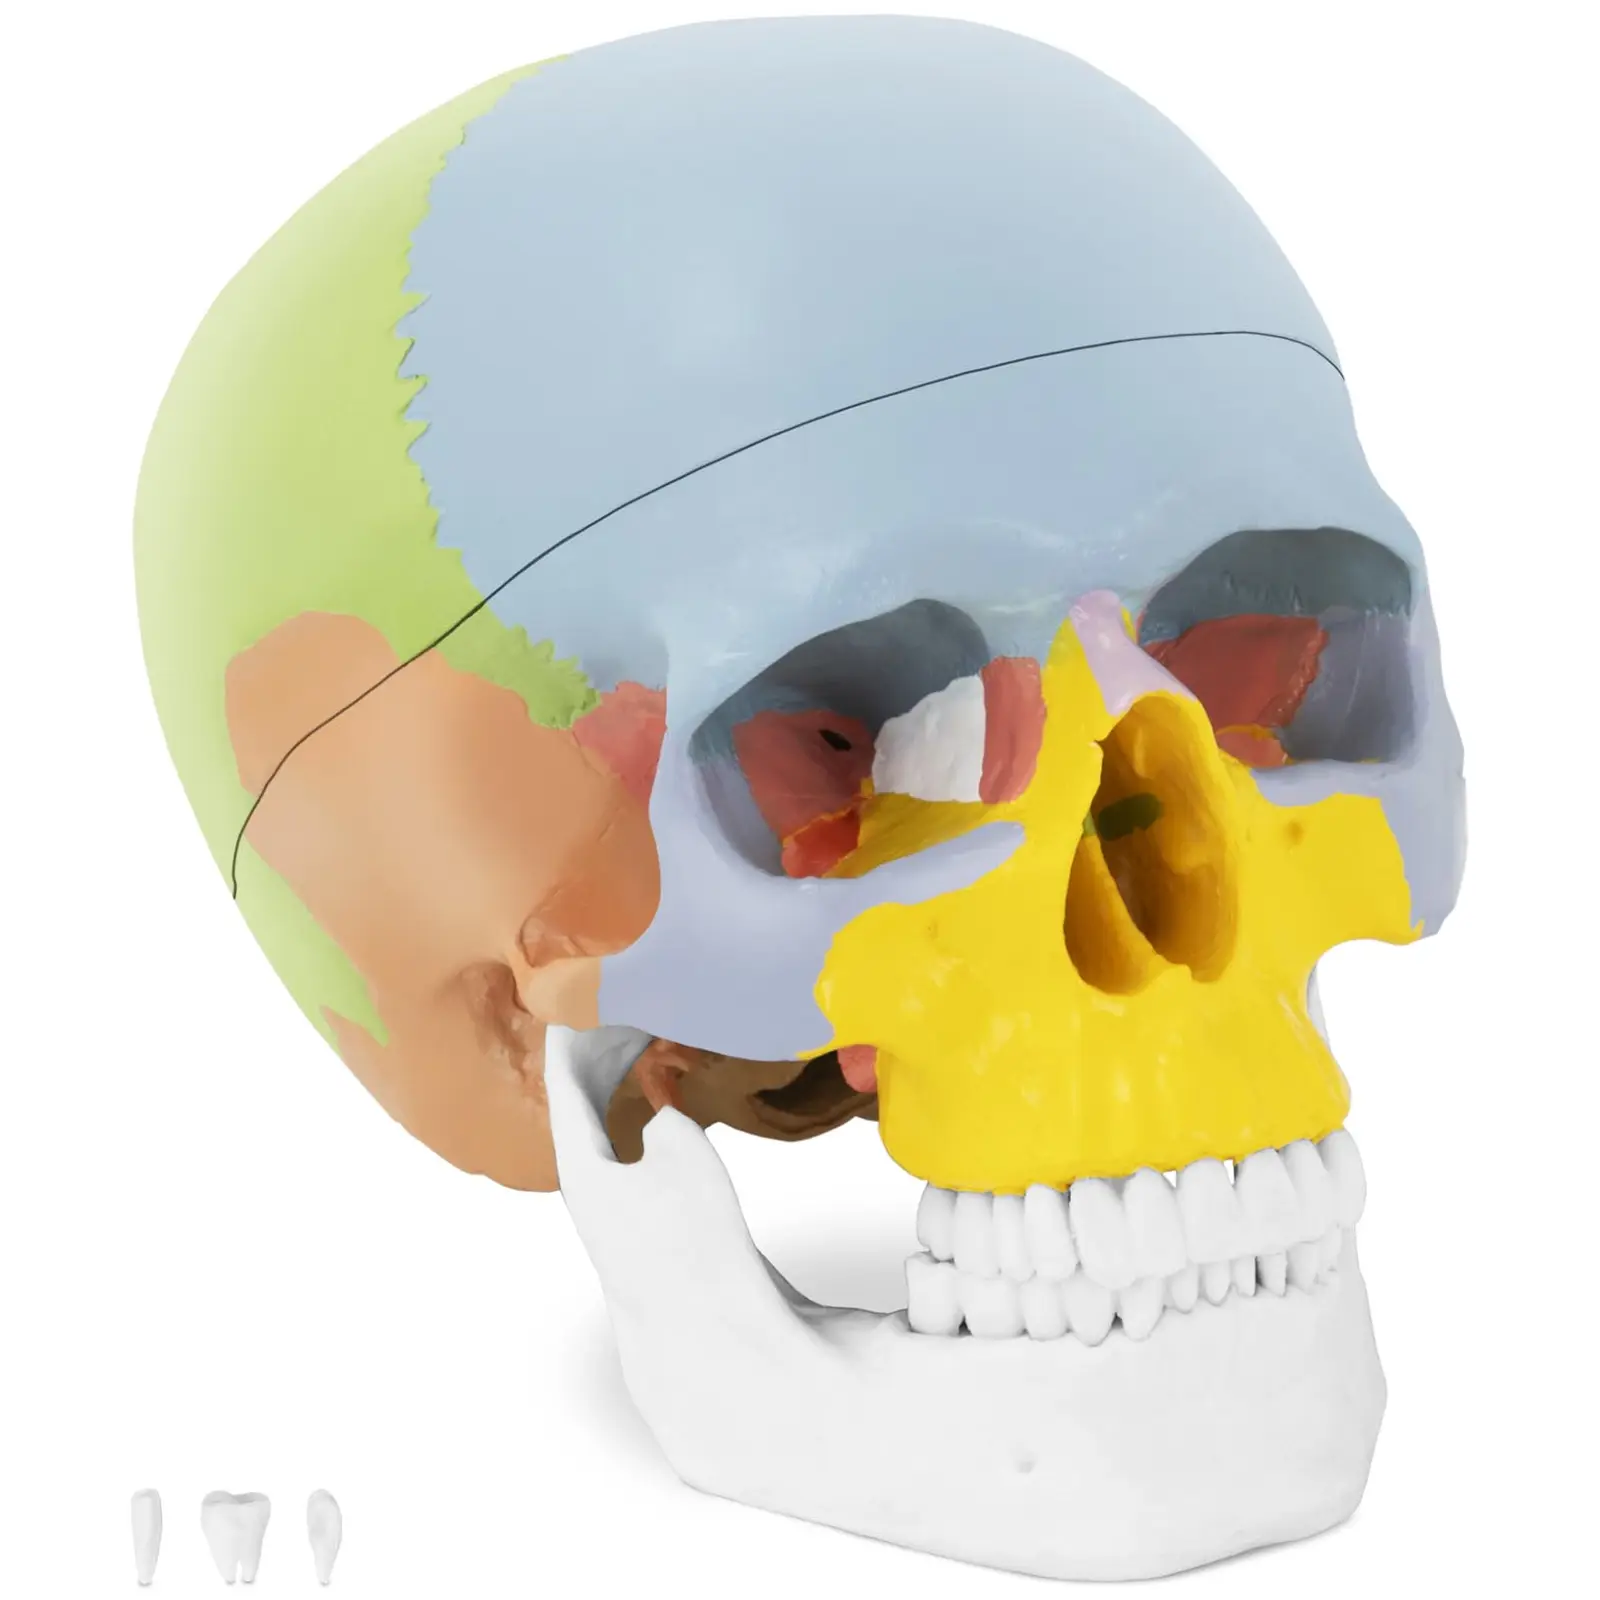 Kranium - Anatomisk modell - Med färg